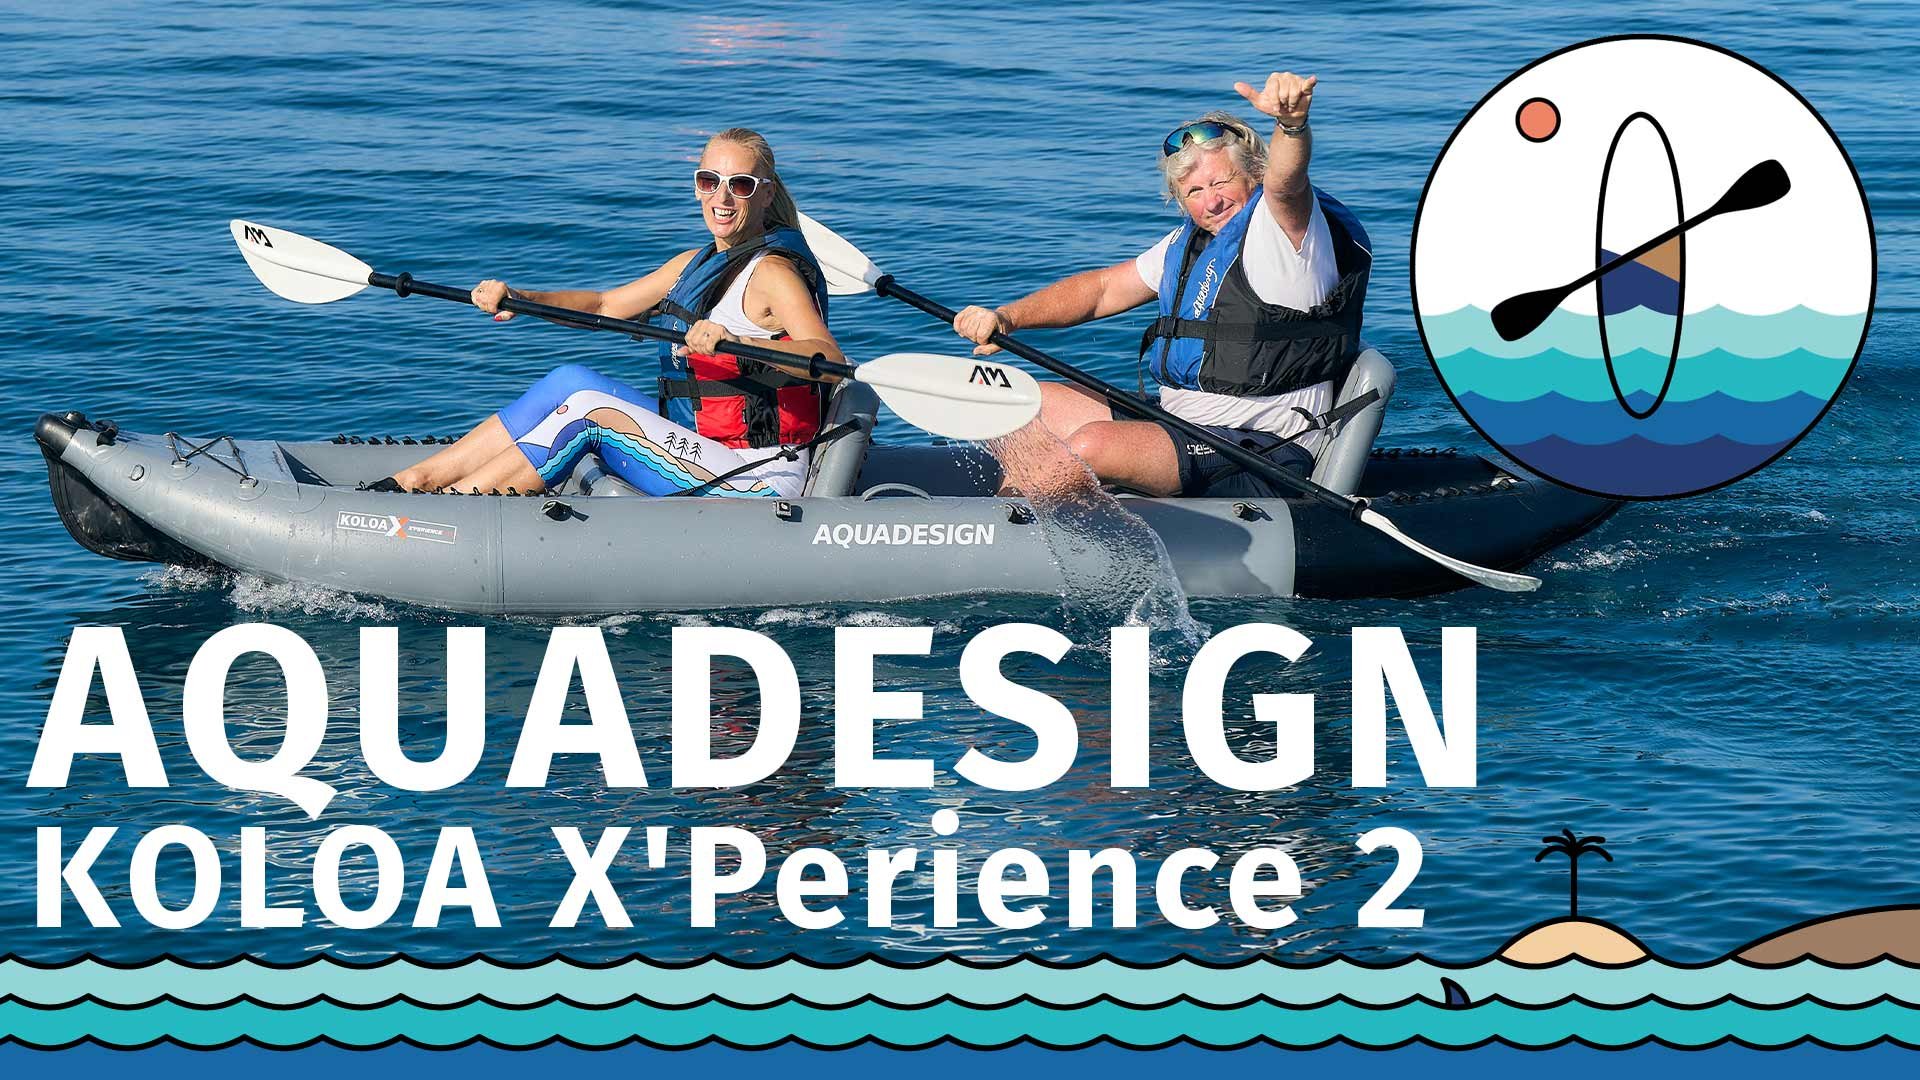 Recensione di kayak gonfiabili AQUADESIGN Koloa Xperience modelli 2024 - 1 e 2 p